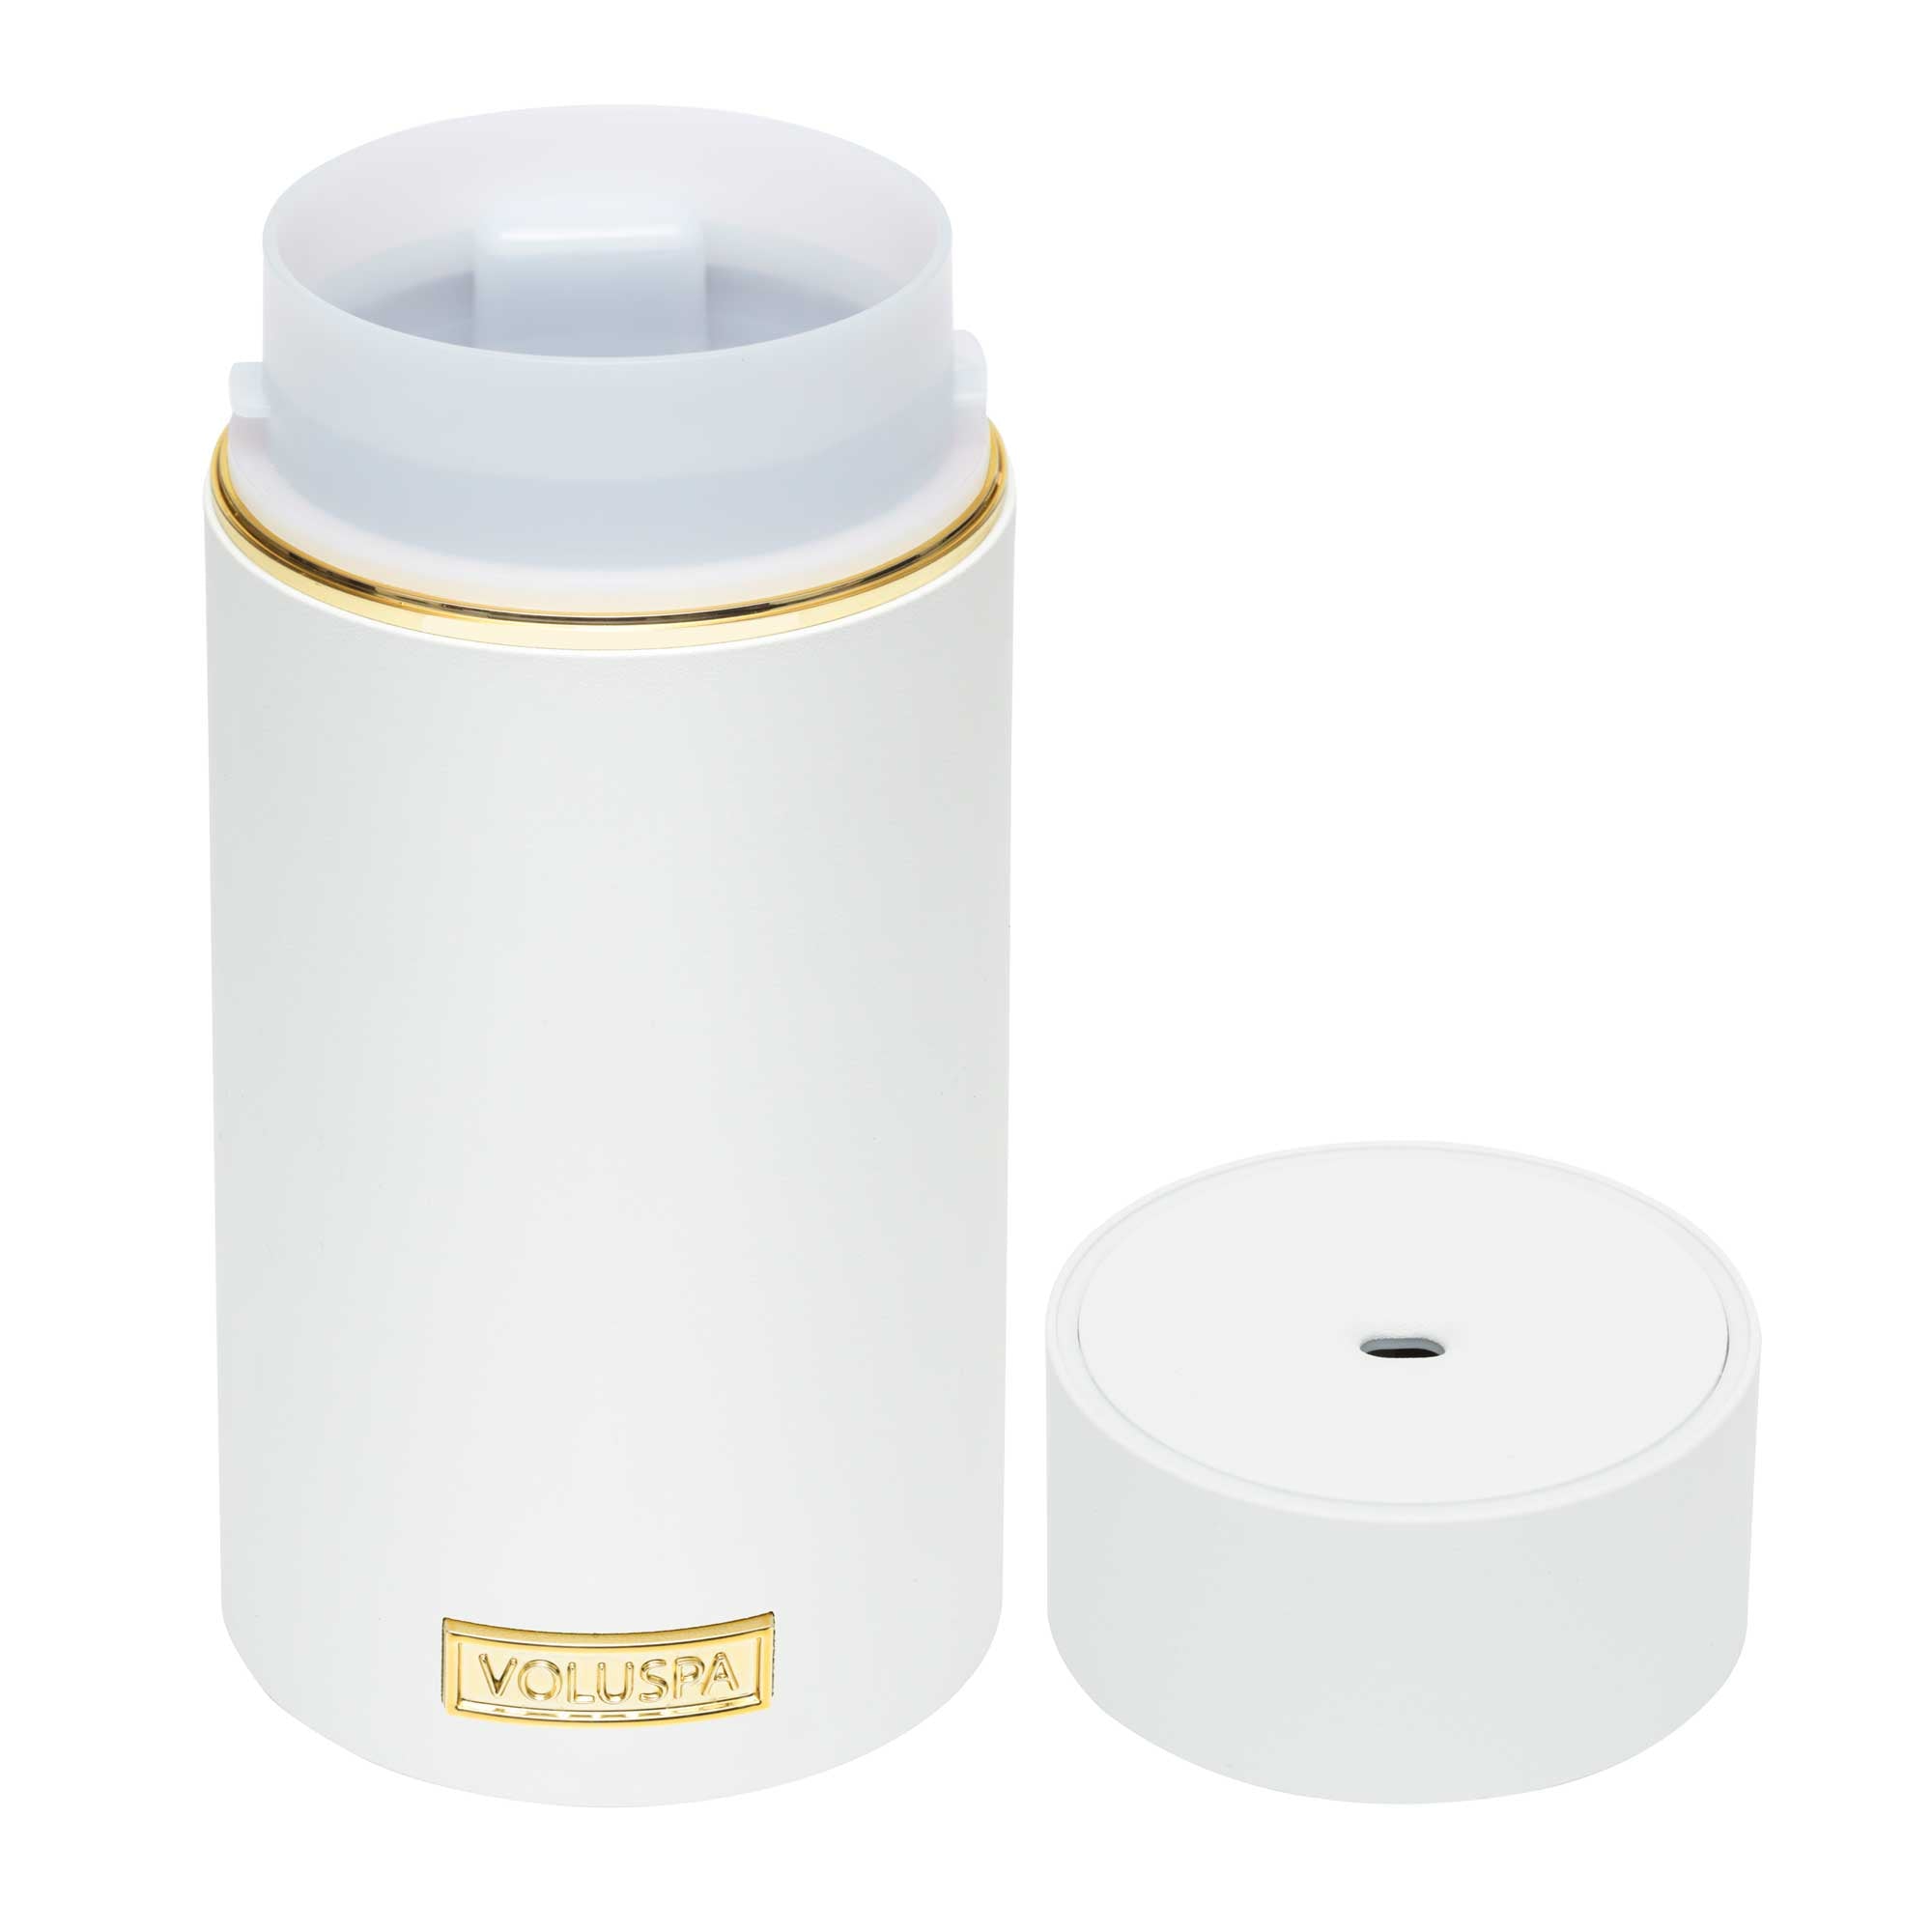 Voluspa Ultrasonic Fragrance Oil Diffuser - WHITE